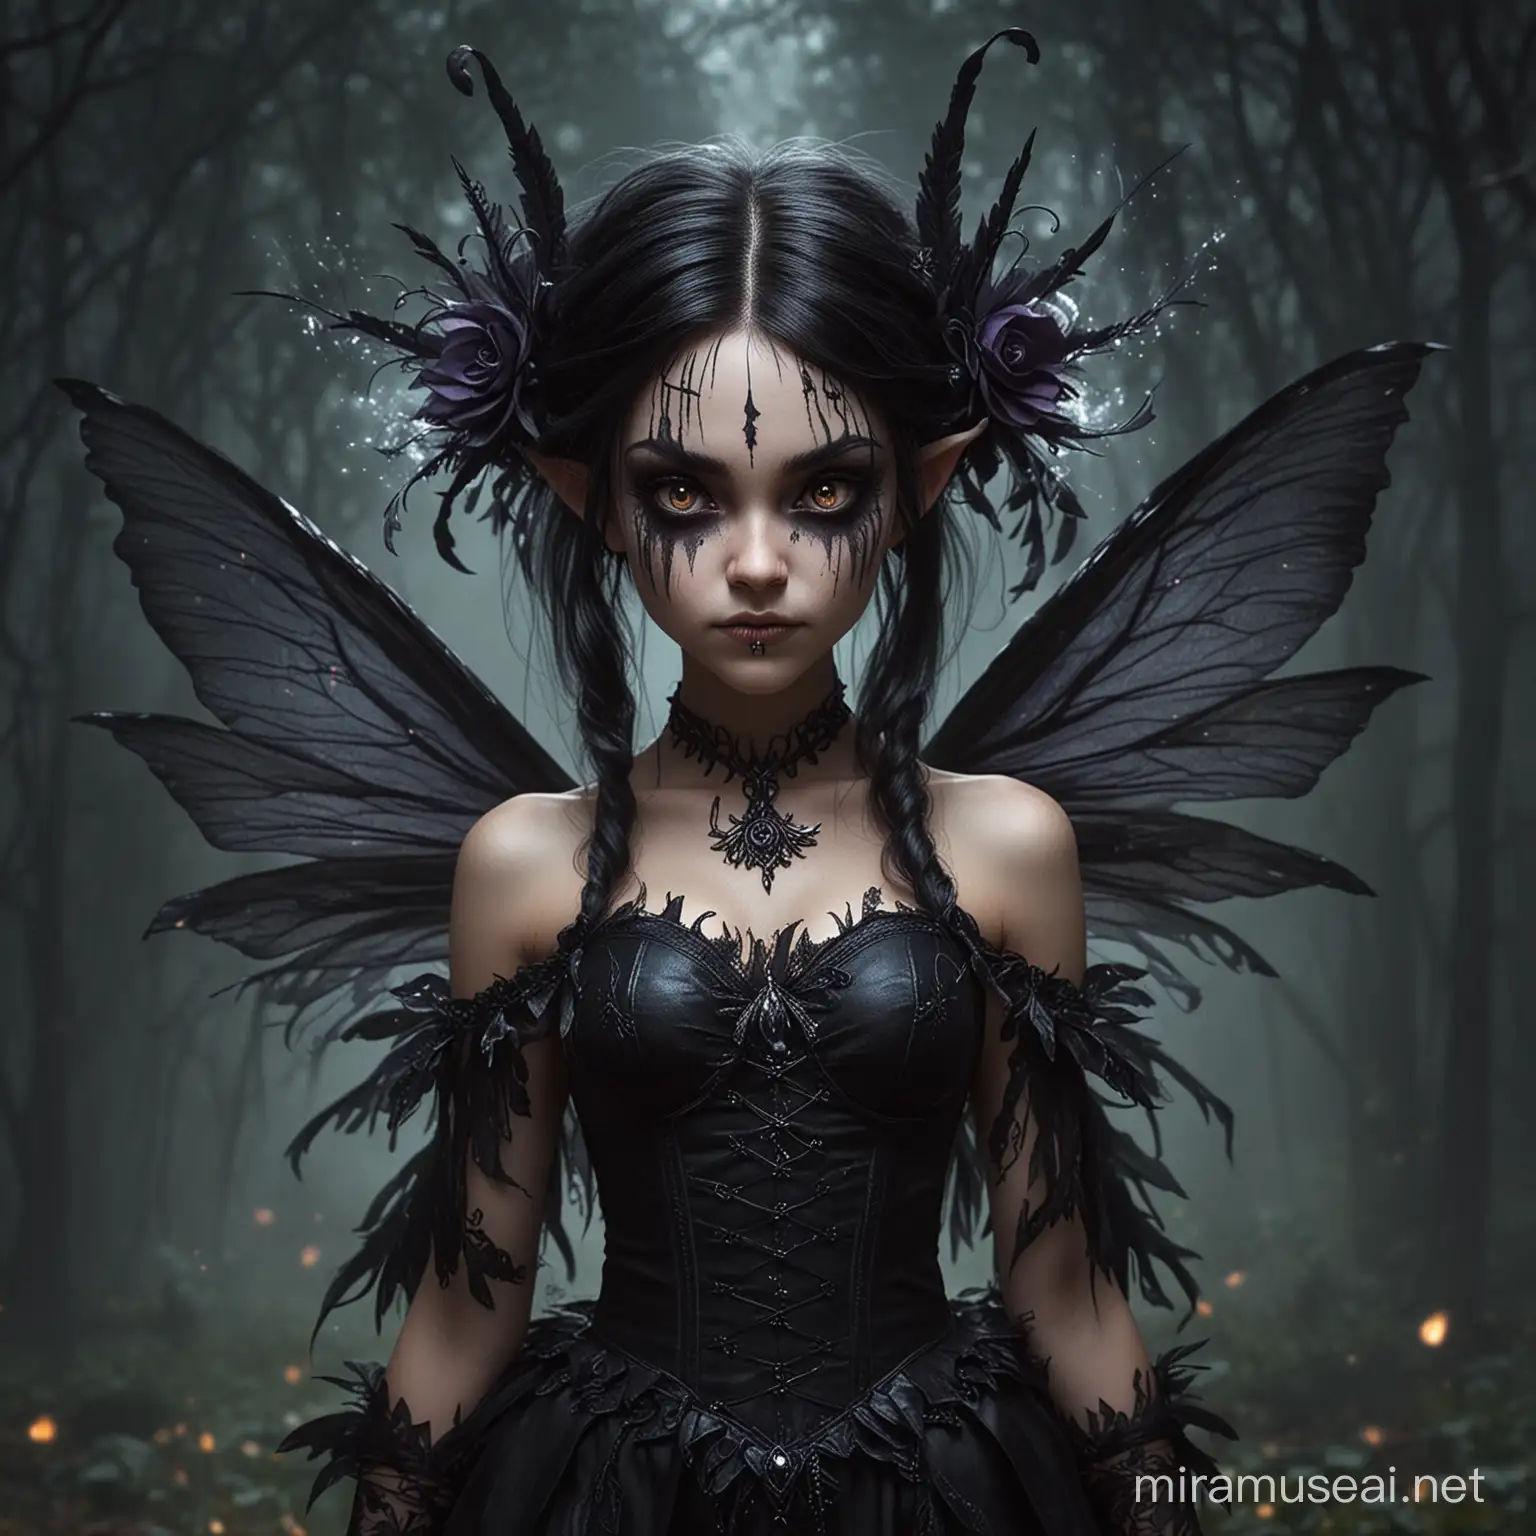  a malevolent dark feywild fairy